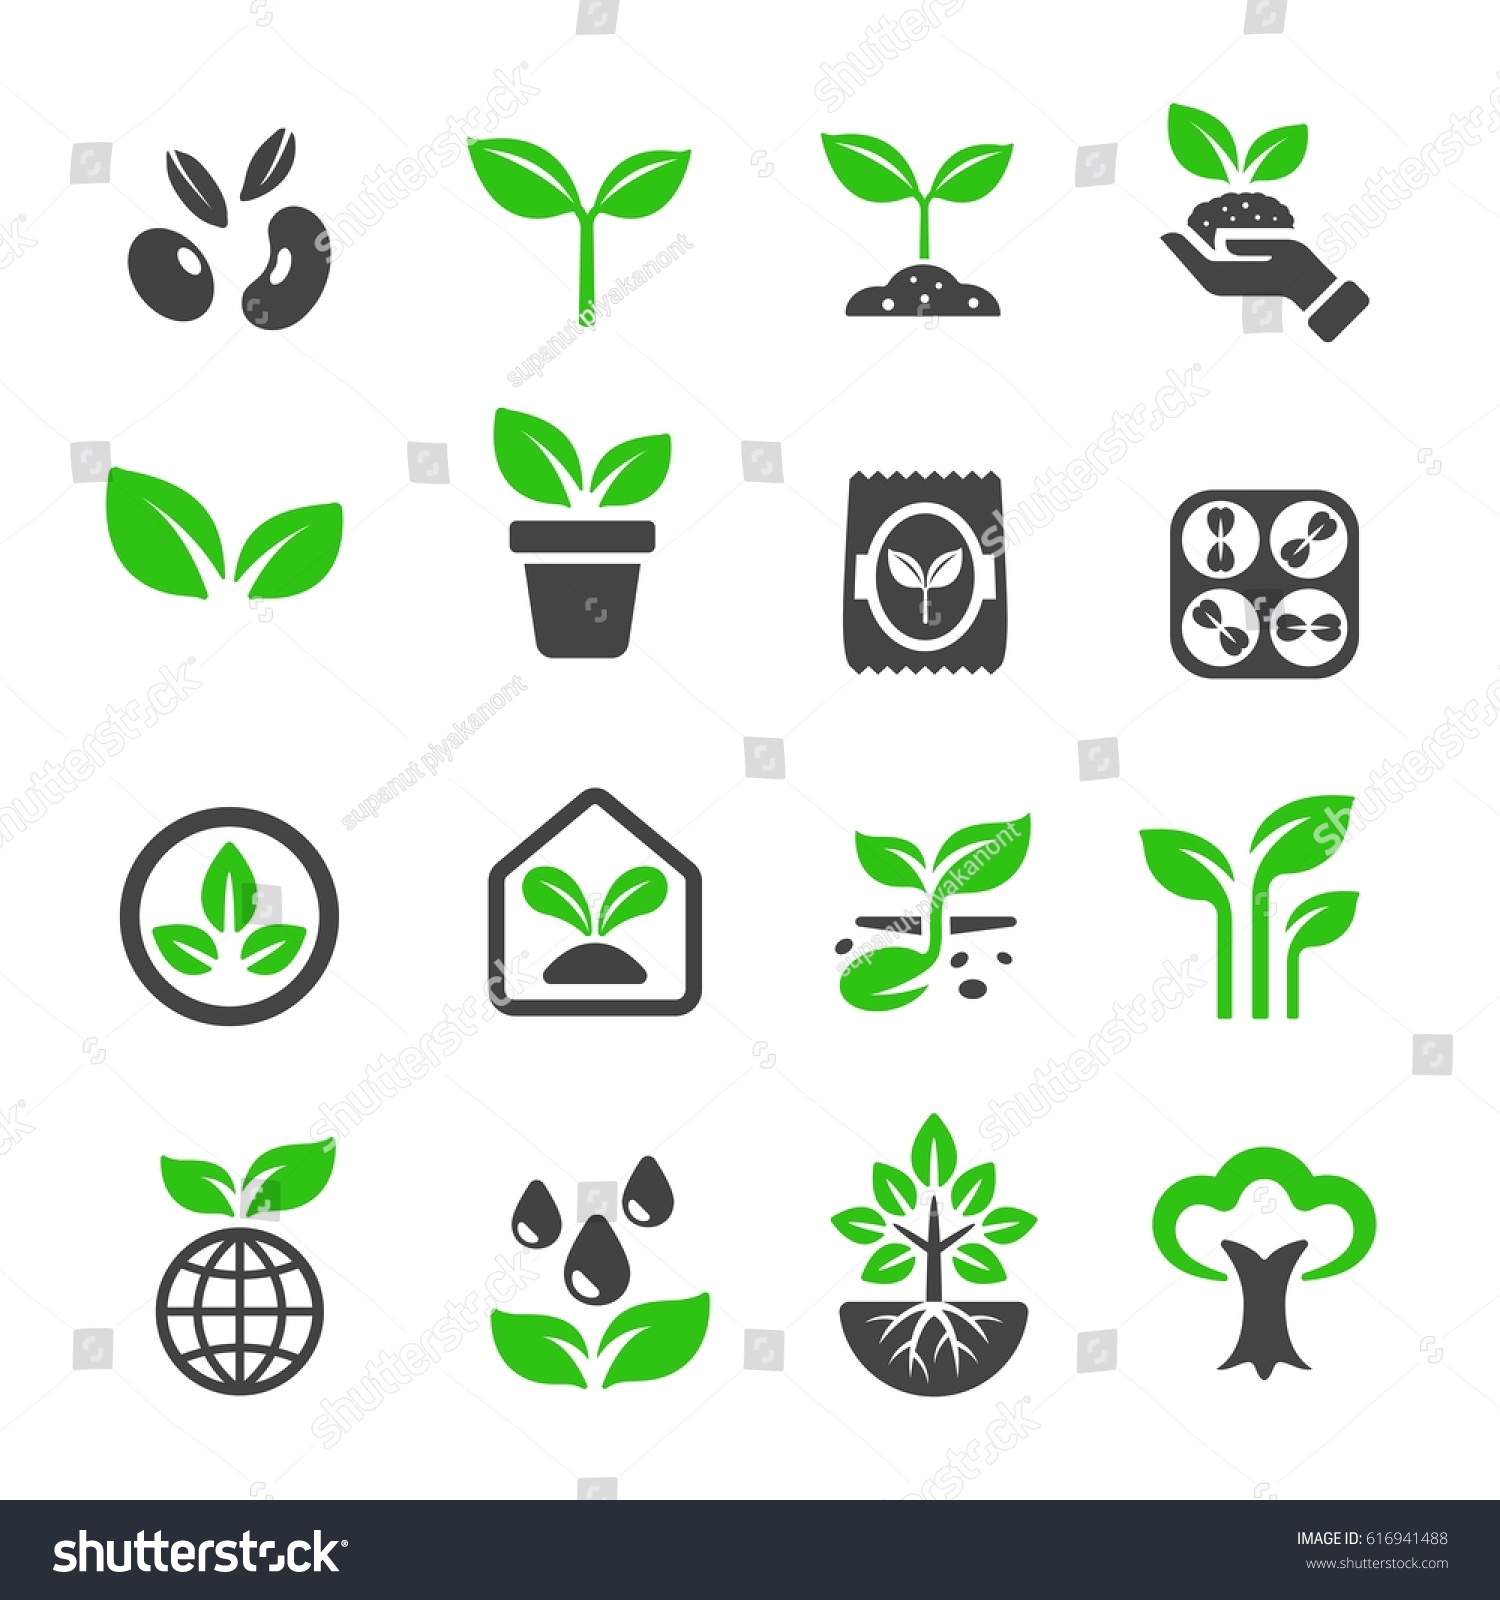 plant icon #616941488